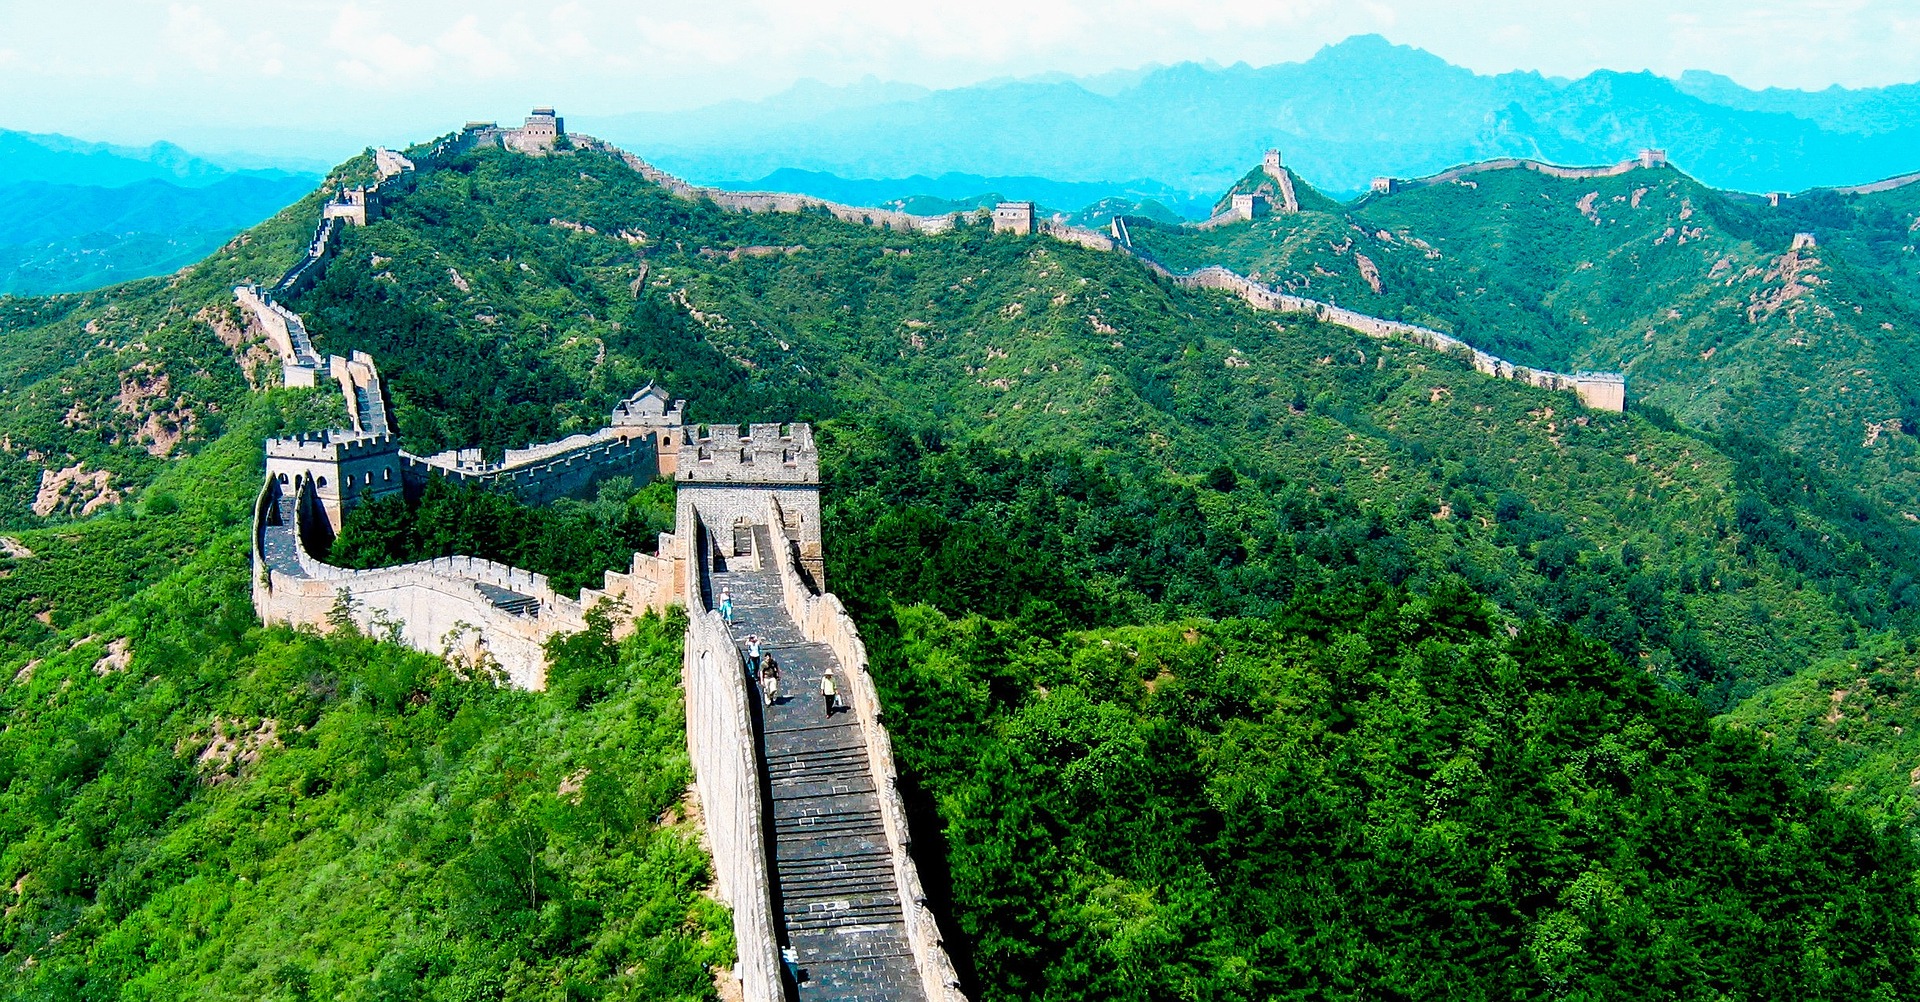 Waar de EU vaak bruggen bouwt naar China voor openheid, stuiten zij wederkerig op een muur. Bron: Pixabay / Dondelord